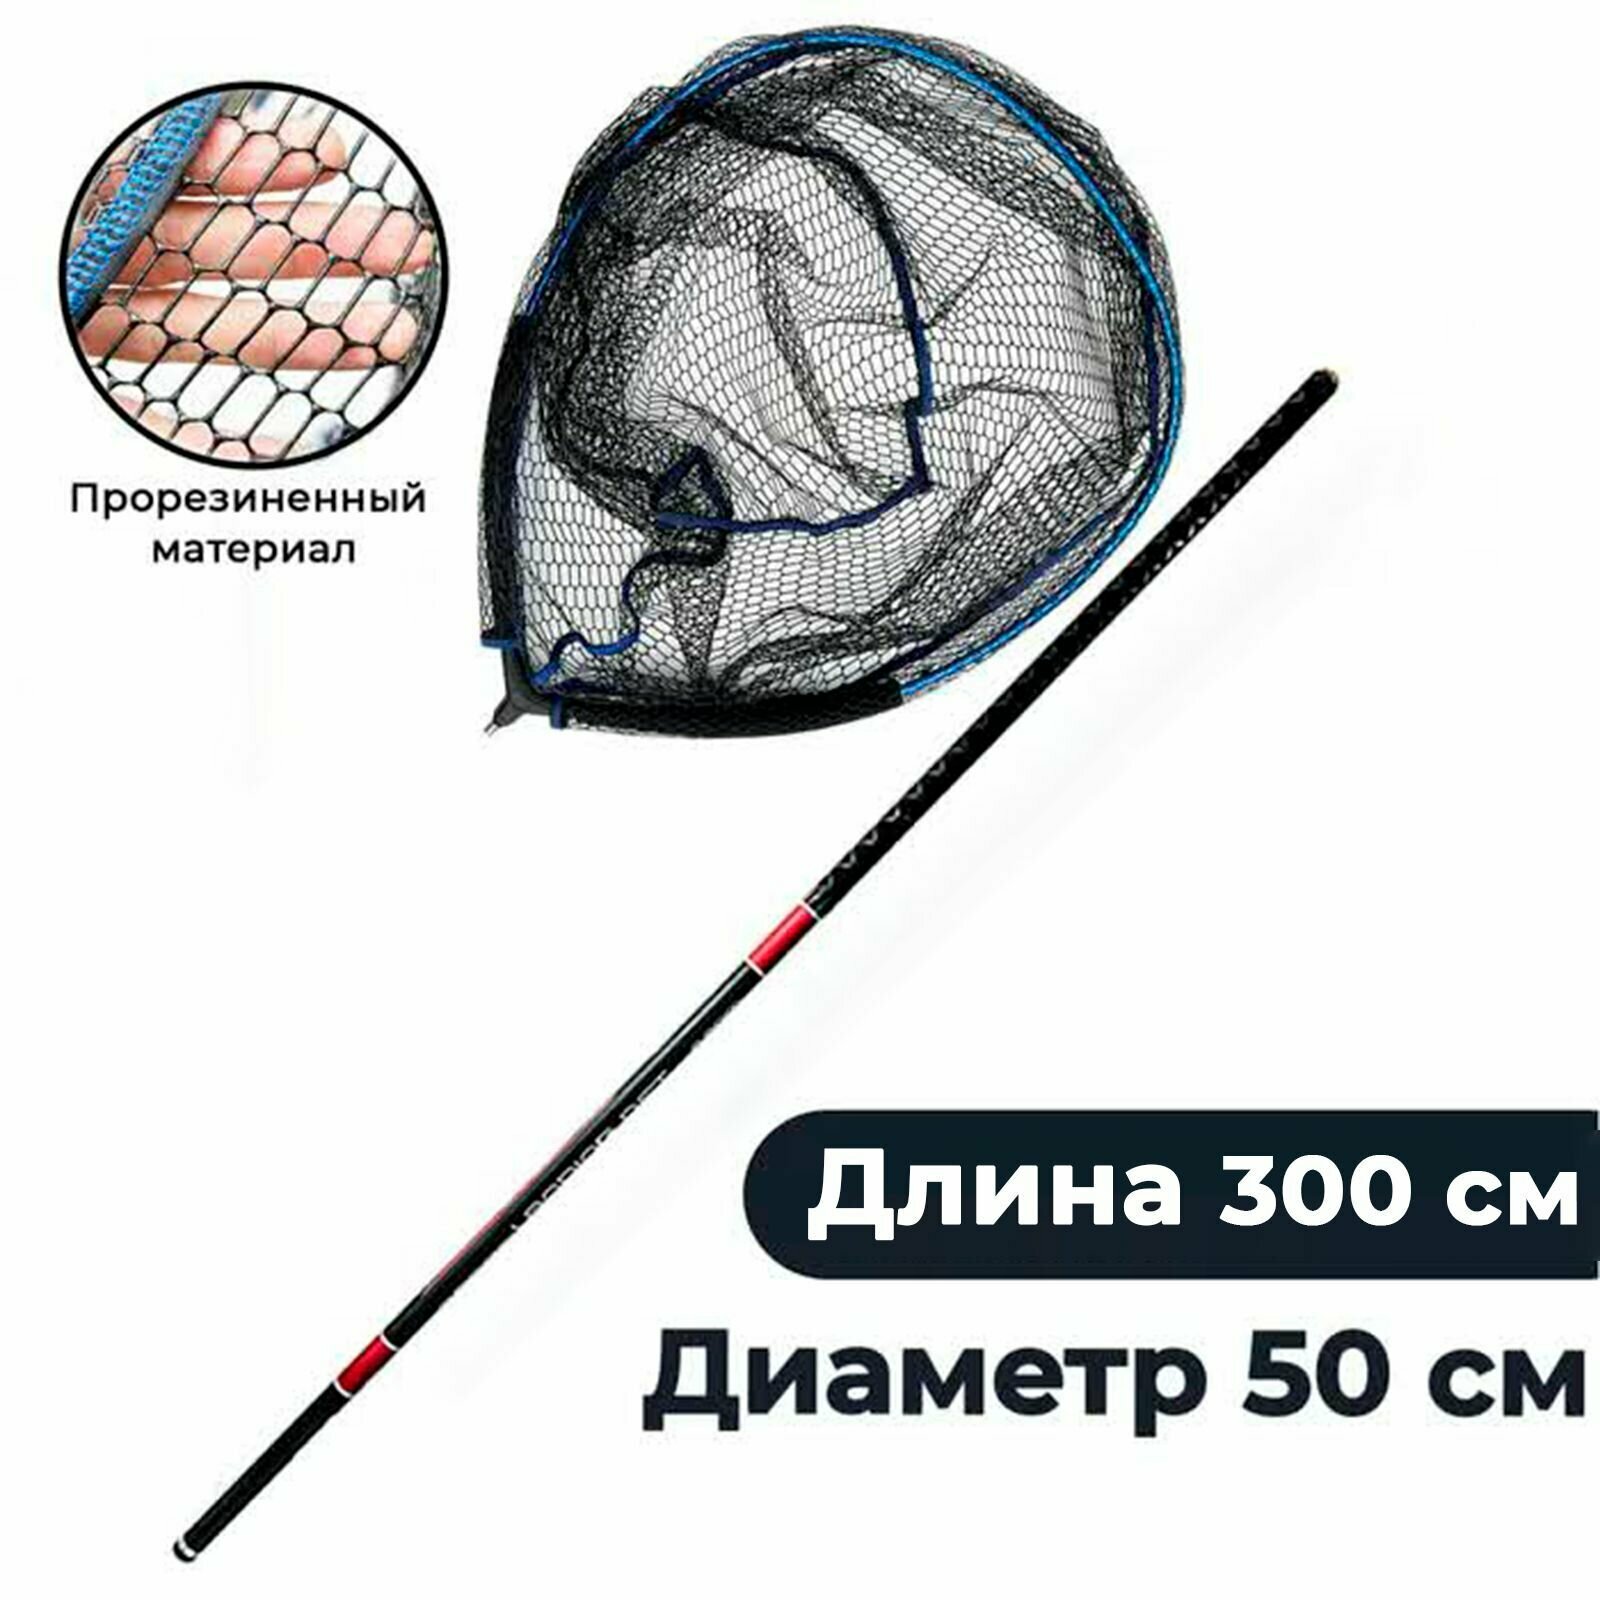 Подсачек плавающий рыболовный 50 на 55 см с карбоновой ручкой до 3 м.